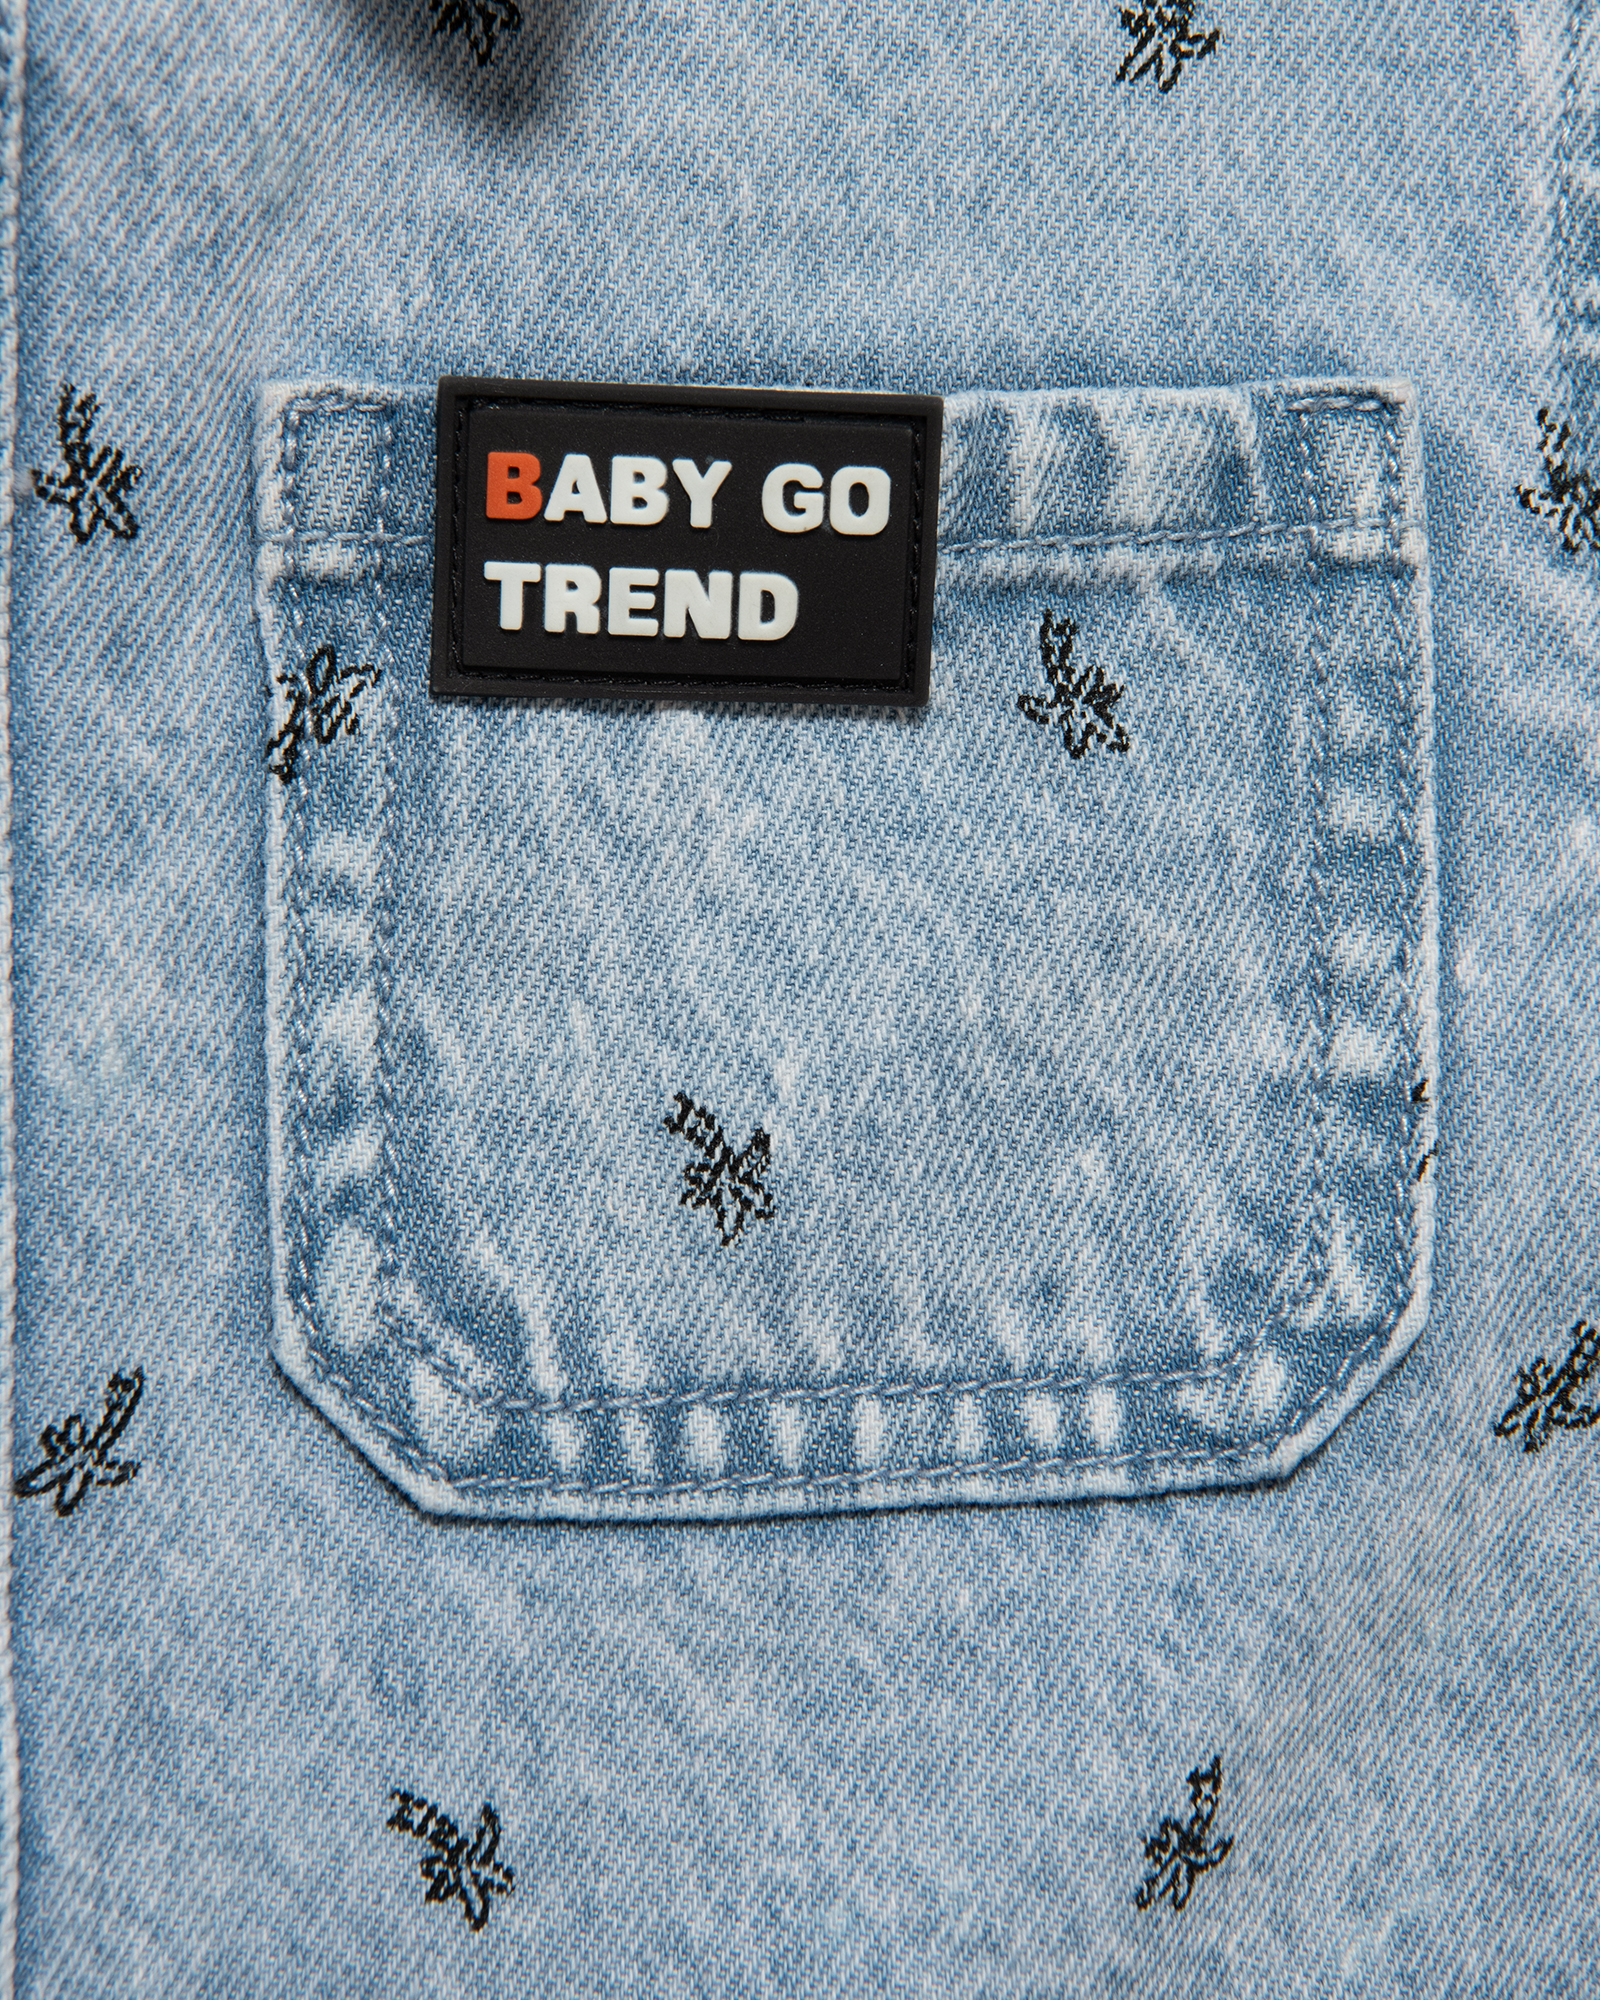 Джинсовая рубашка Baby Go Trend S24BT1-D34ib-55 - фото 5